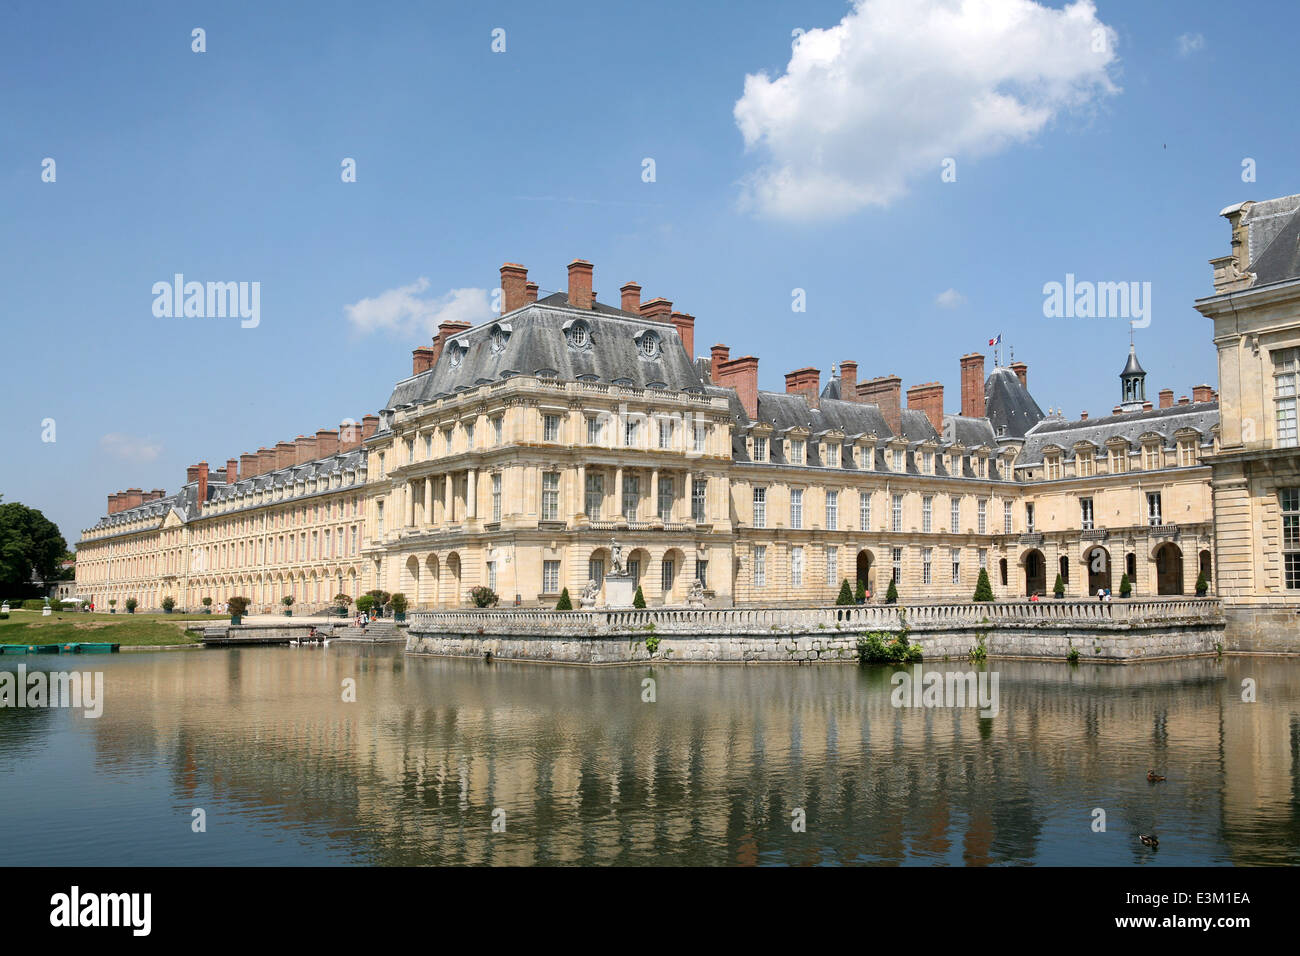 Chateau de Fontainebleau Stock Photo